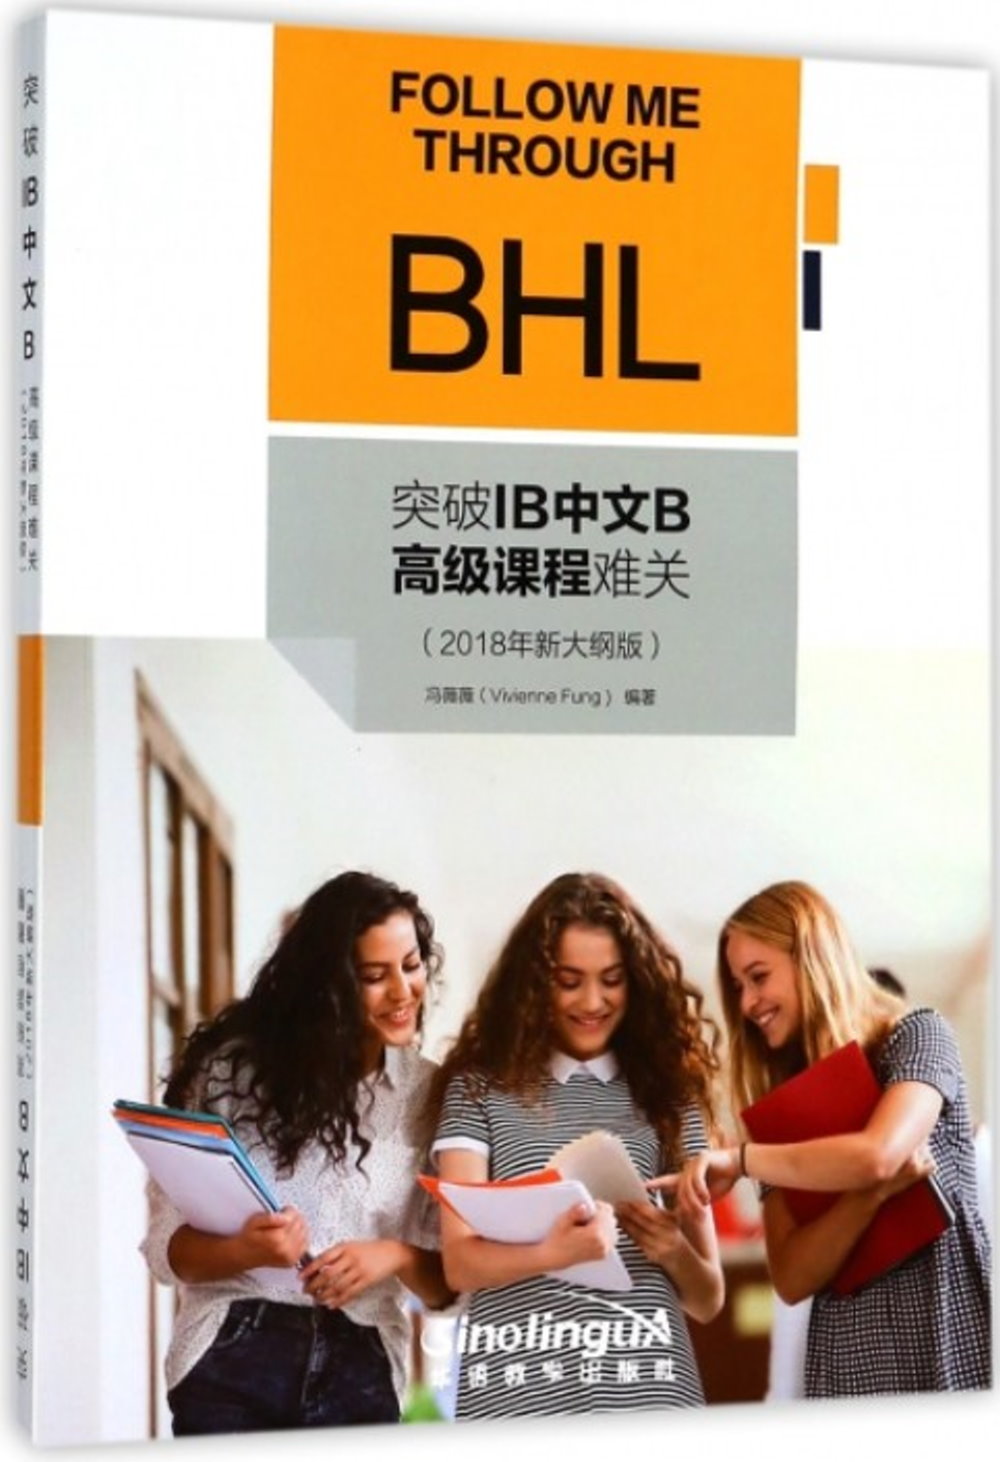 突破IB中文B高級課程難關（2018年新大綱版）